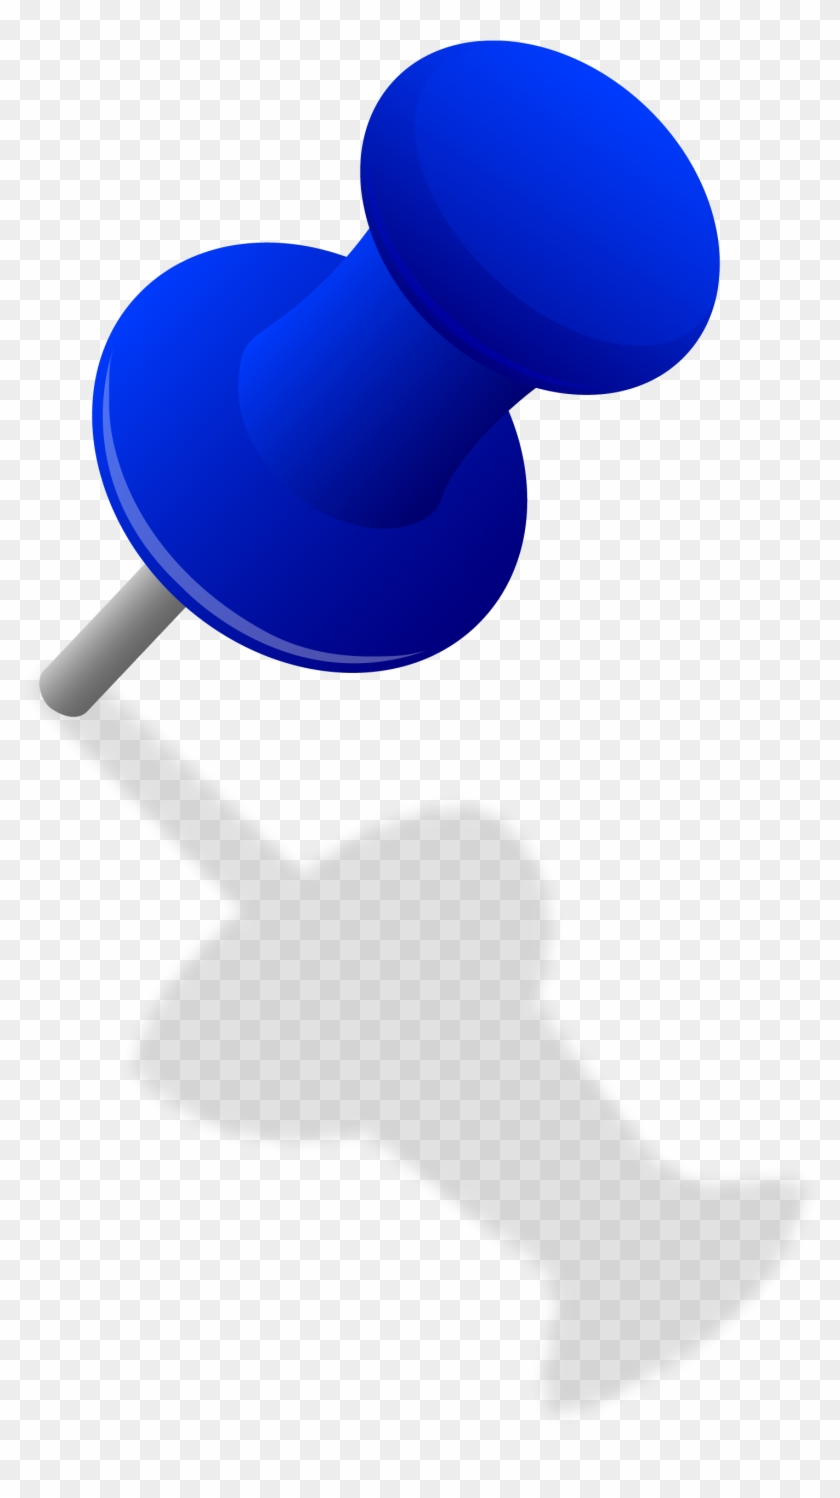 Blue Thumbtack In Wall - Push Pin Clip Art #415135